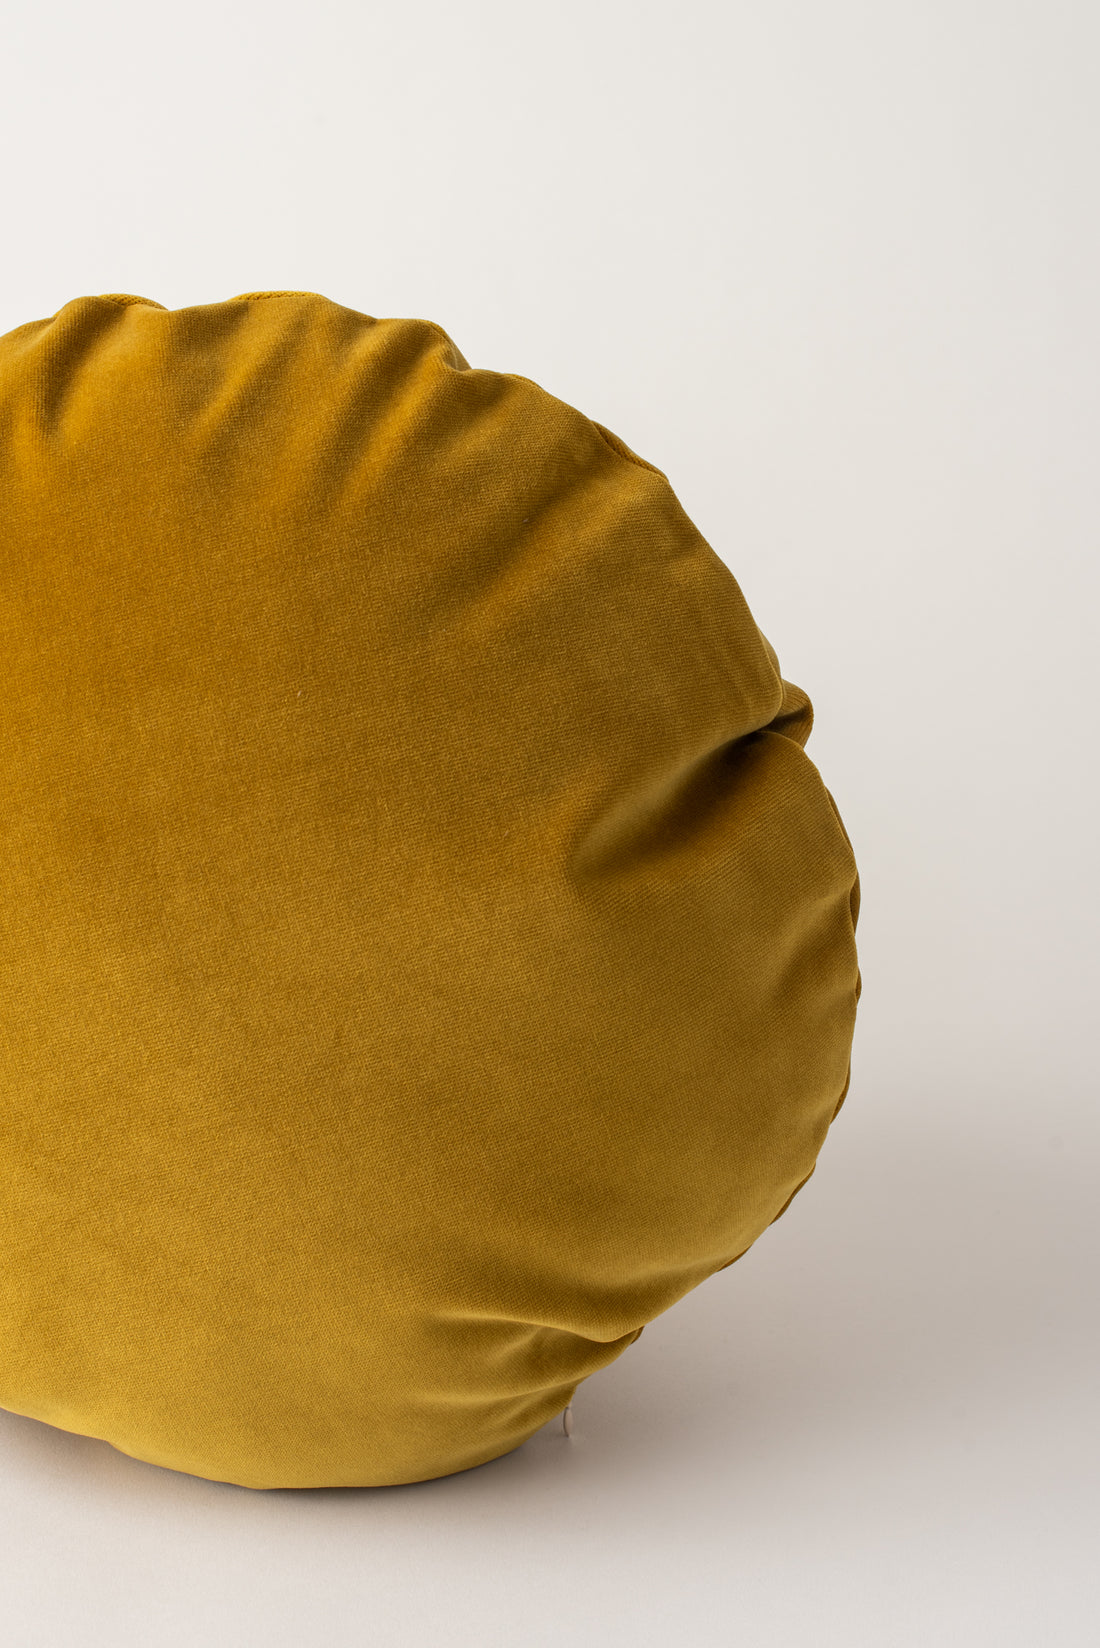 Kindred Cushion - Gold Velvet Round